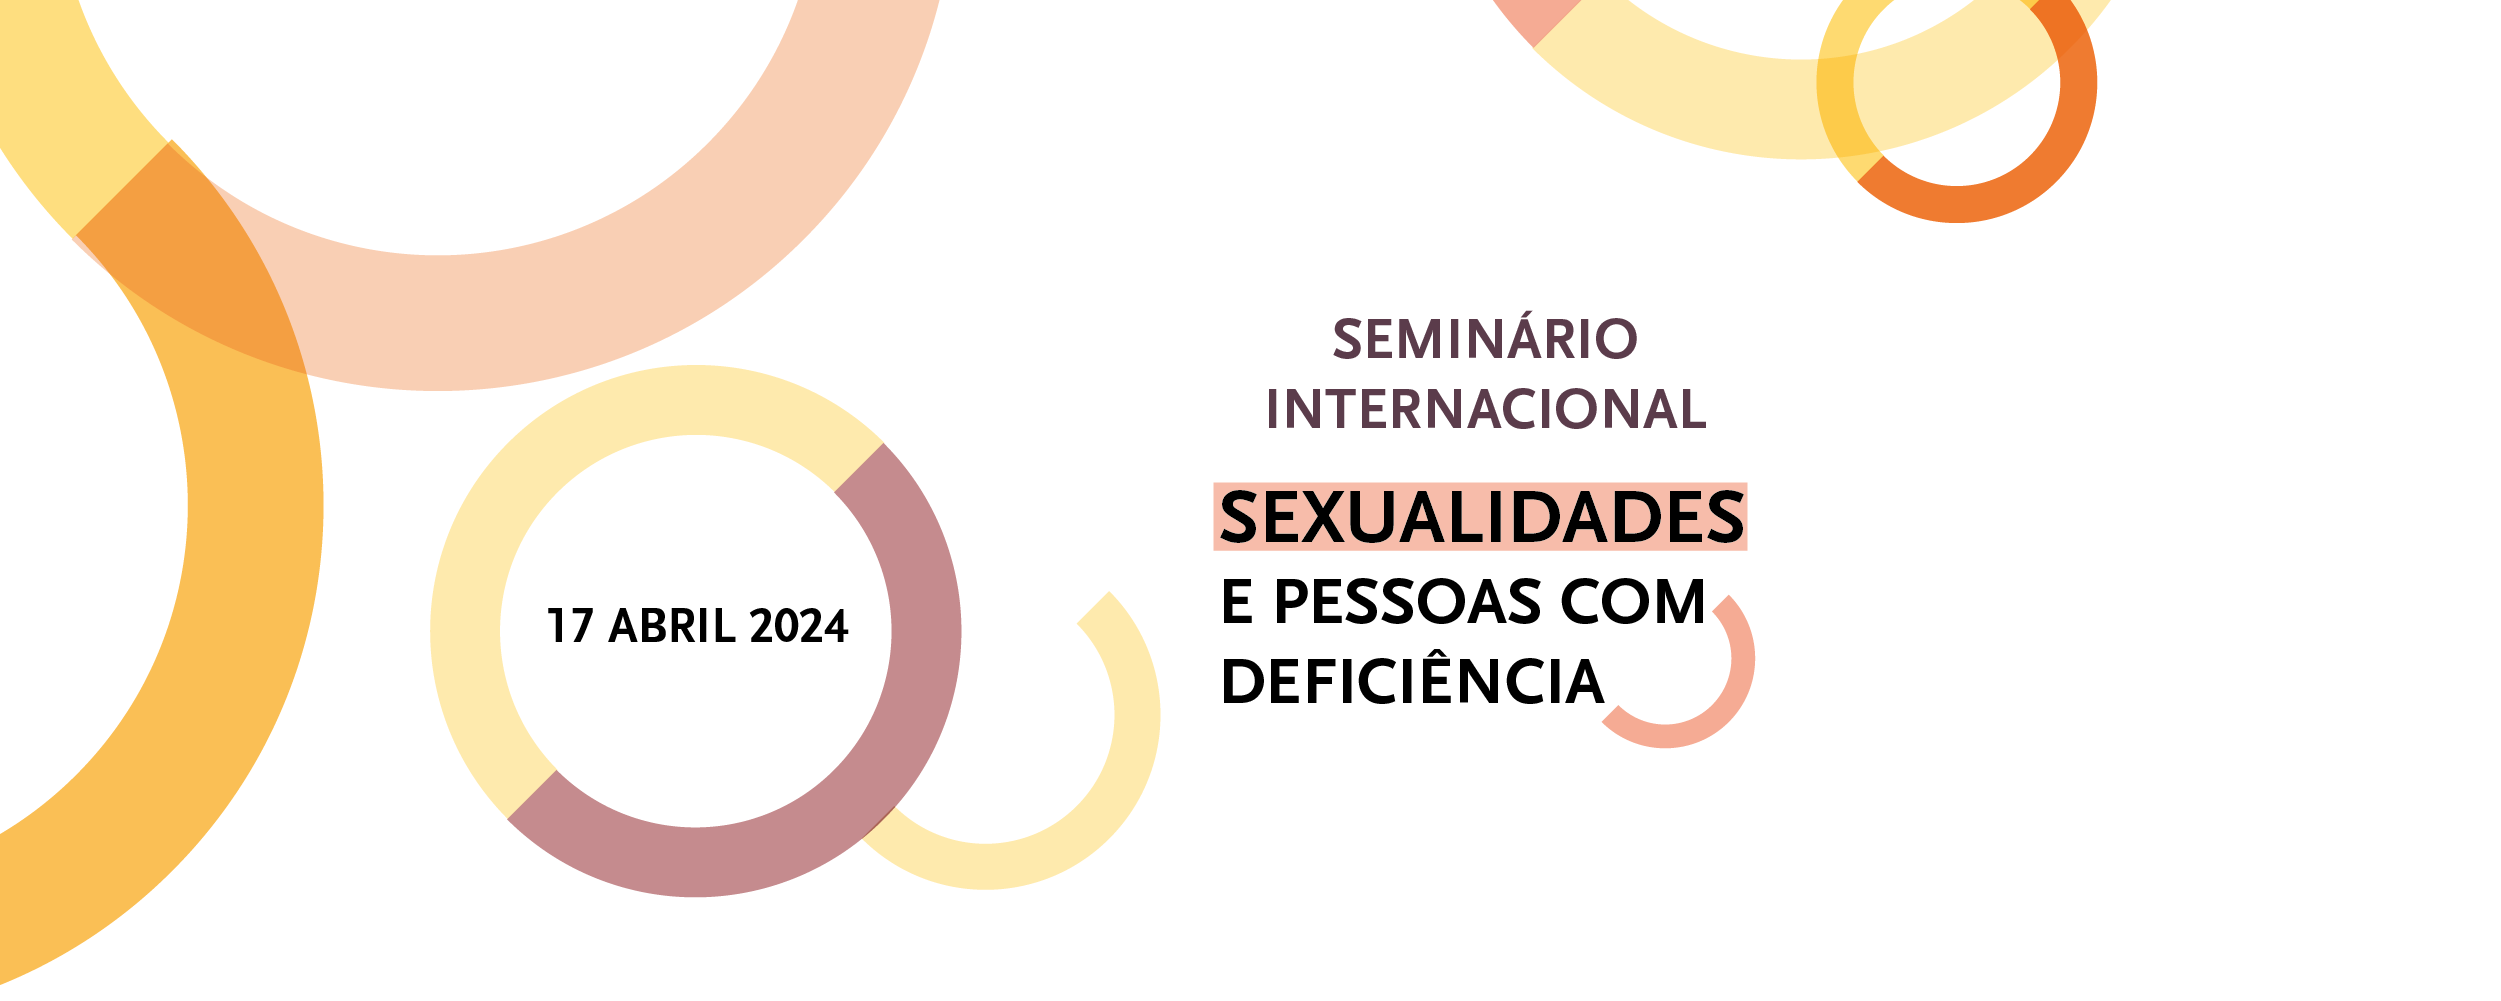 SEMINÁRIO INTERNACIONAL SEXUALIDADES E PESSOAS COM DEFICIÊNCIA